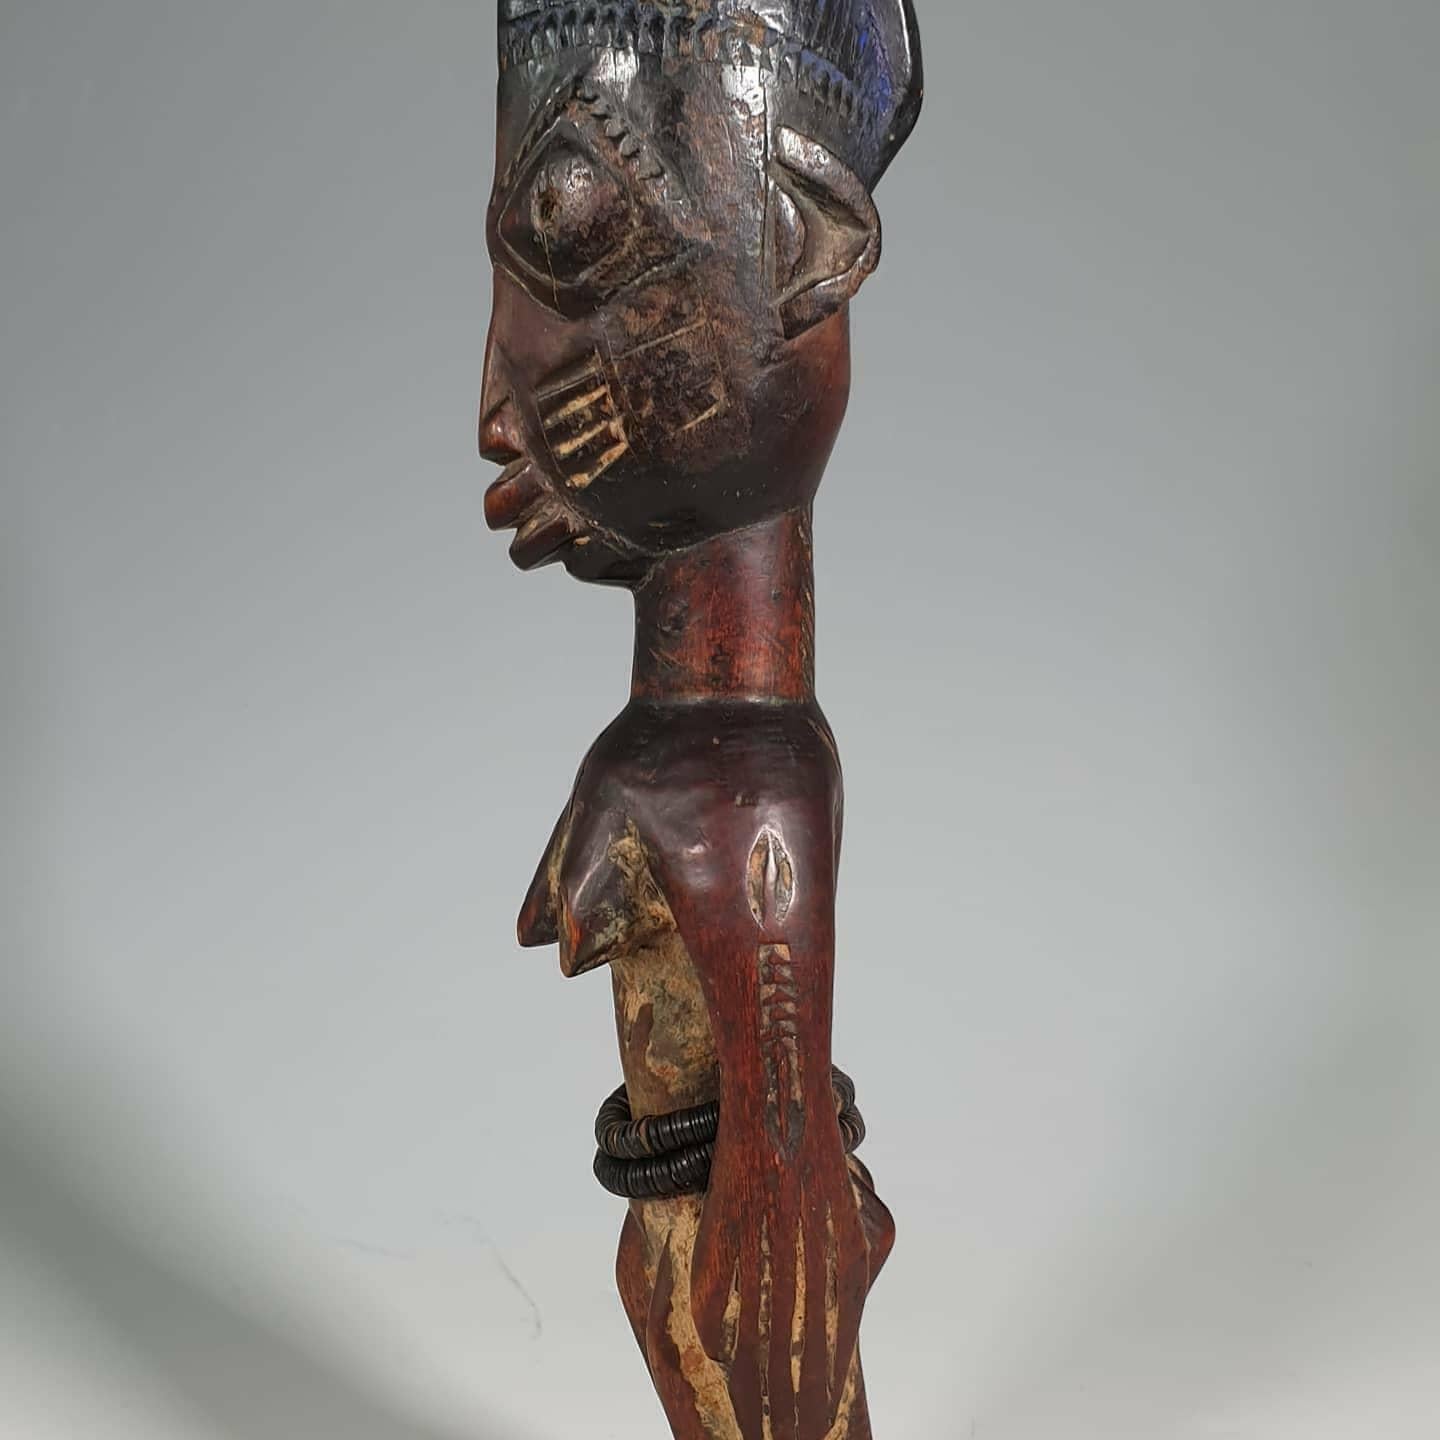 Ein schönes Beispiel für eine Yoruba-Ibeji-Figur aus dem frühen 20. Jahrhundert aus der südwestlichen Region Nigerias. Der Kult der Ibeji (Zwillinge) reicht Hunderte von Jahren zurück, da die Geburt von Zwillingen den Eltern und der Familie großes